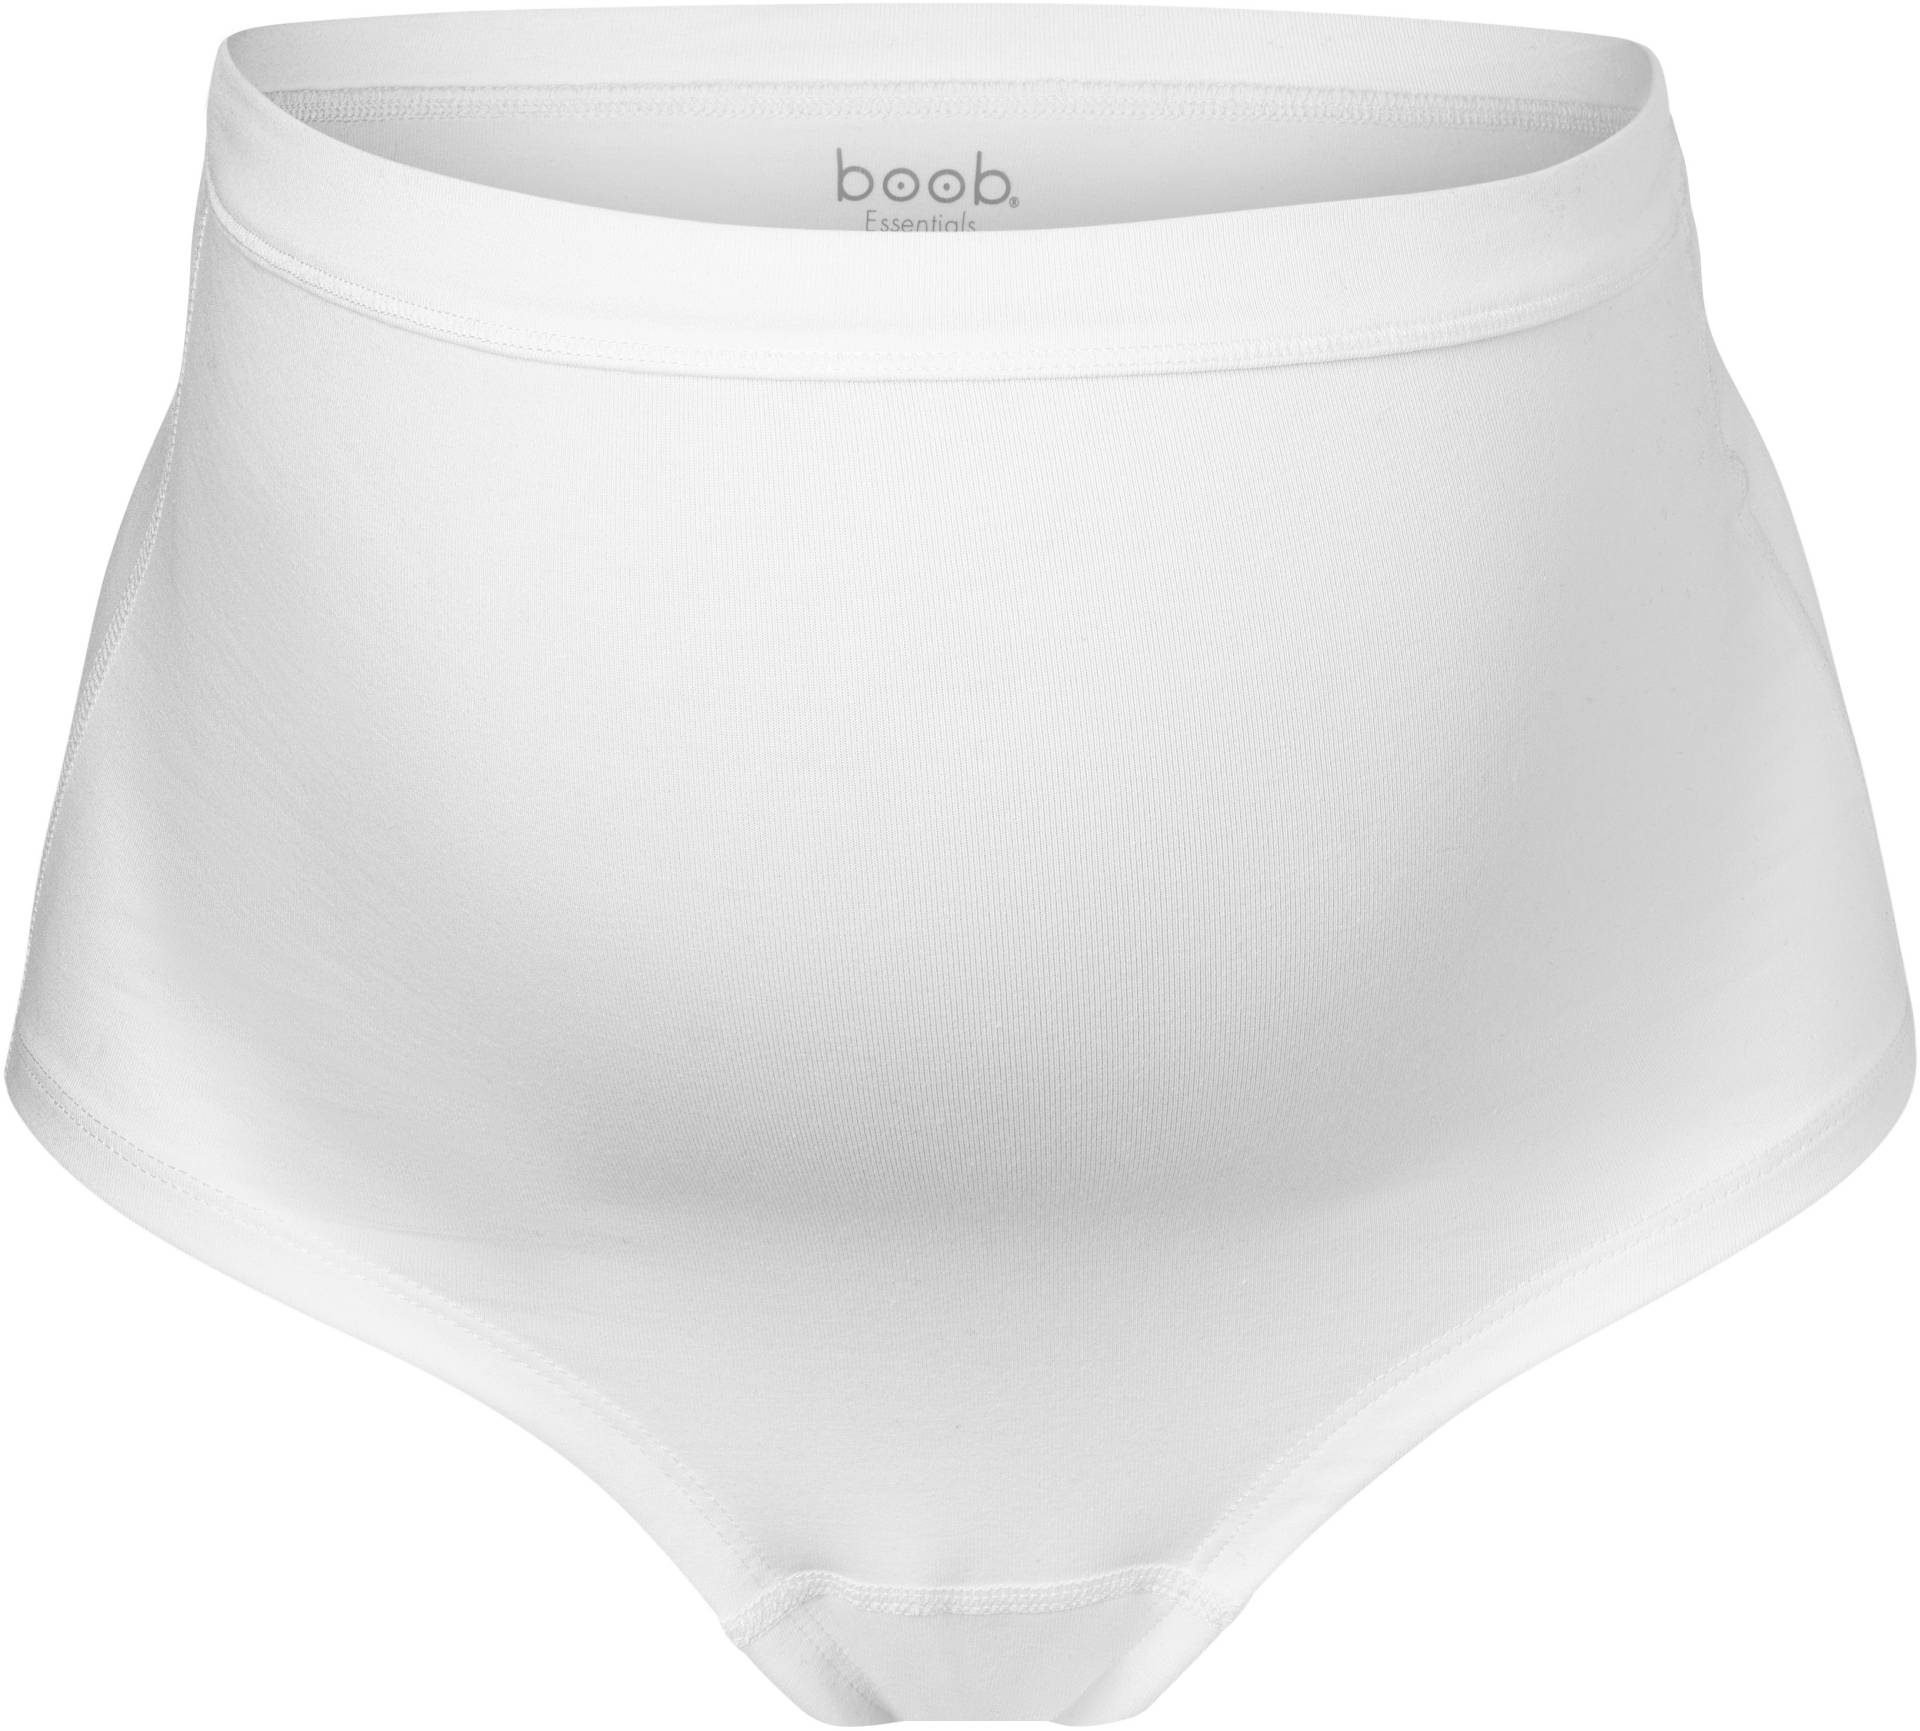 Boob Essentials Umstandunterhose, Weiß, XL von Boob